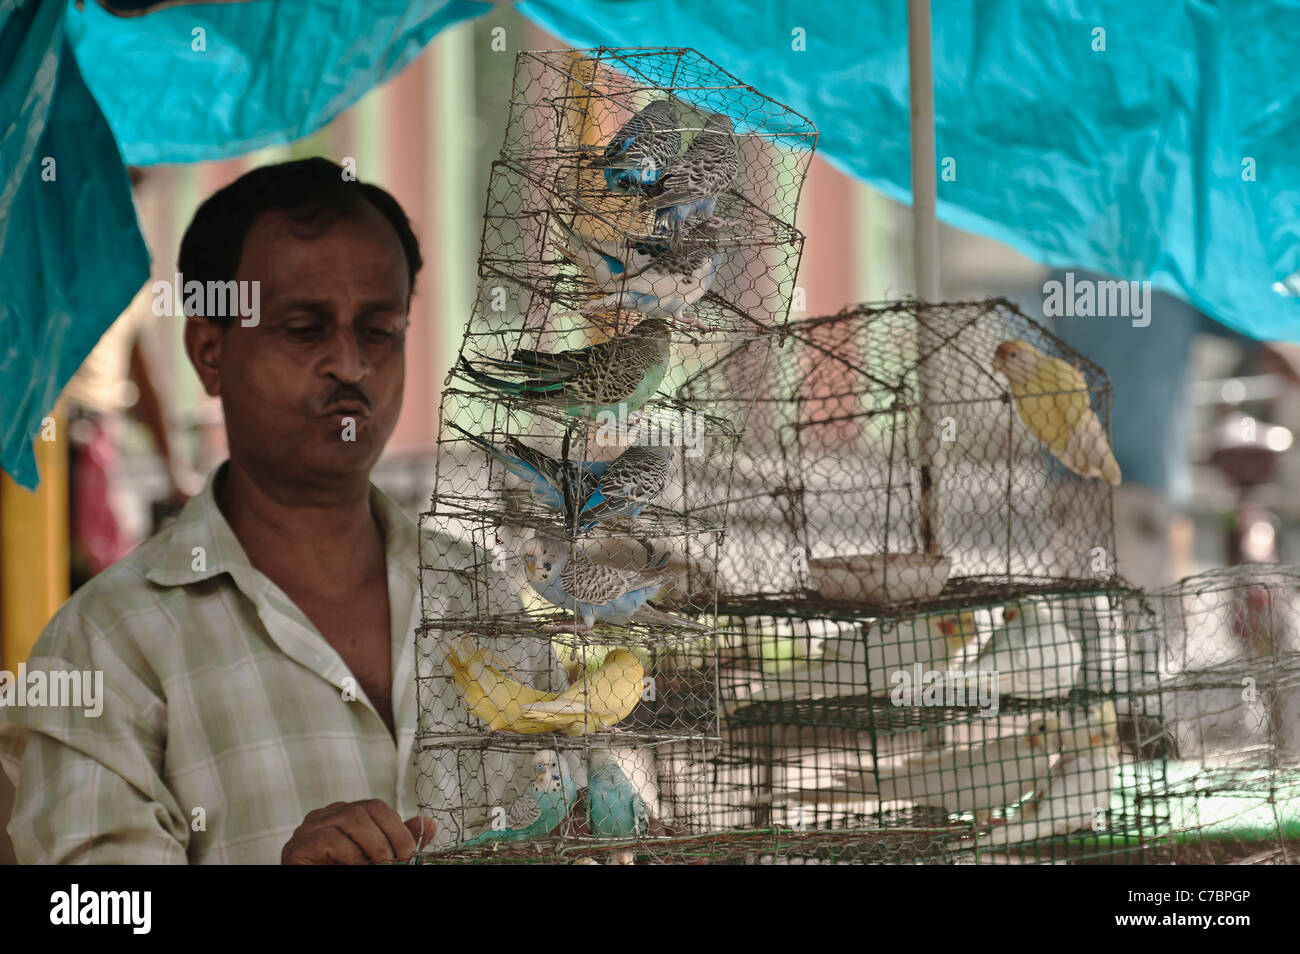 Bird market -Aviary bird seller-Galif St.Kolkata-India -. Stock Photo